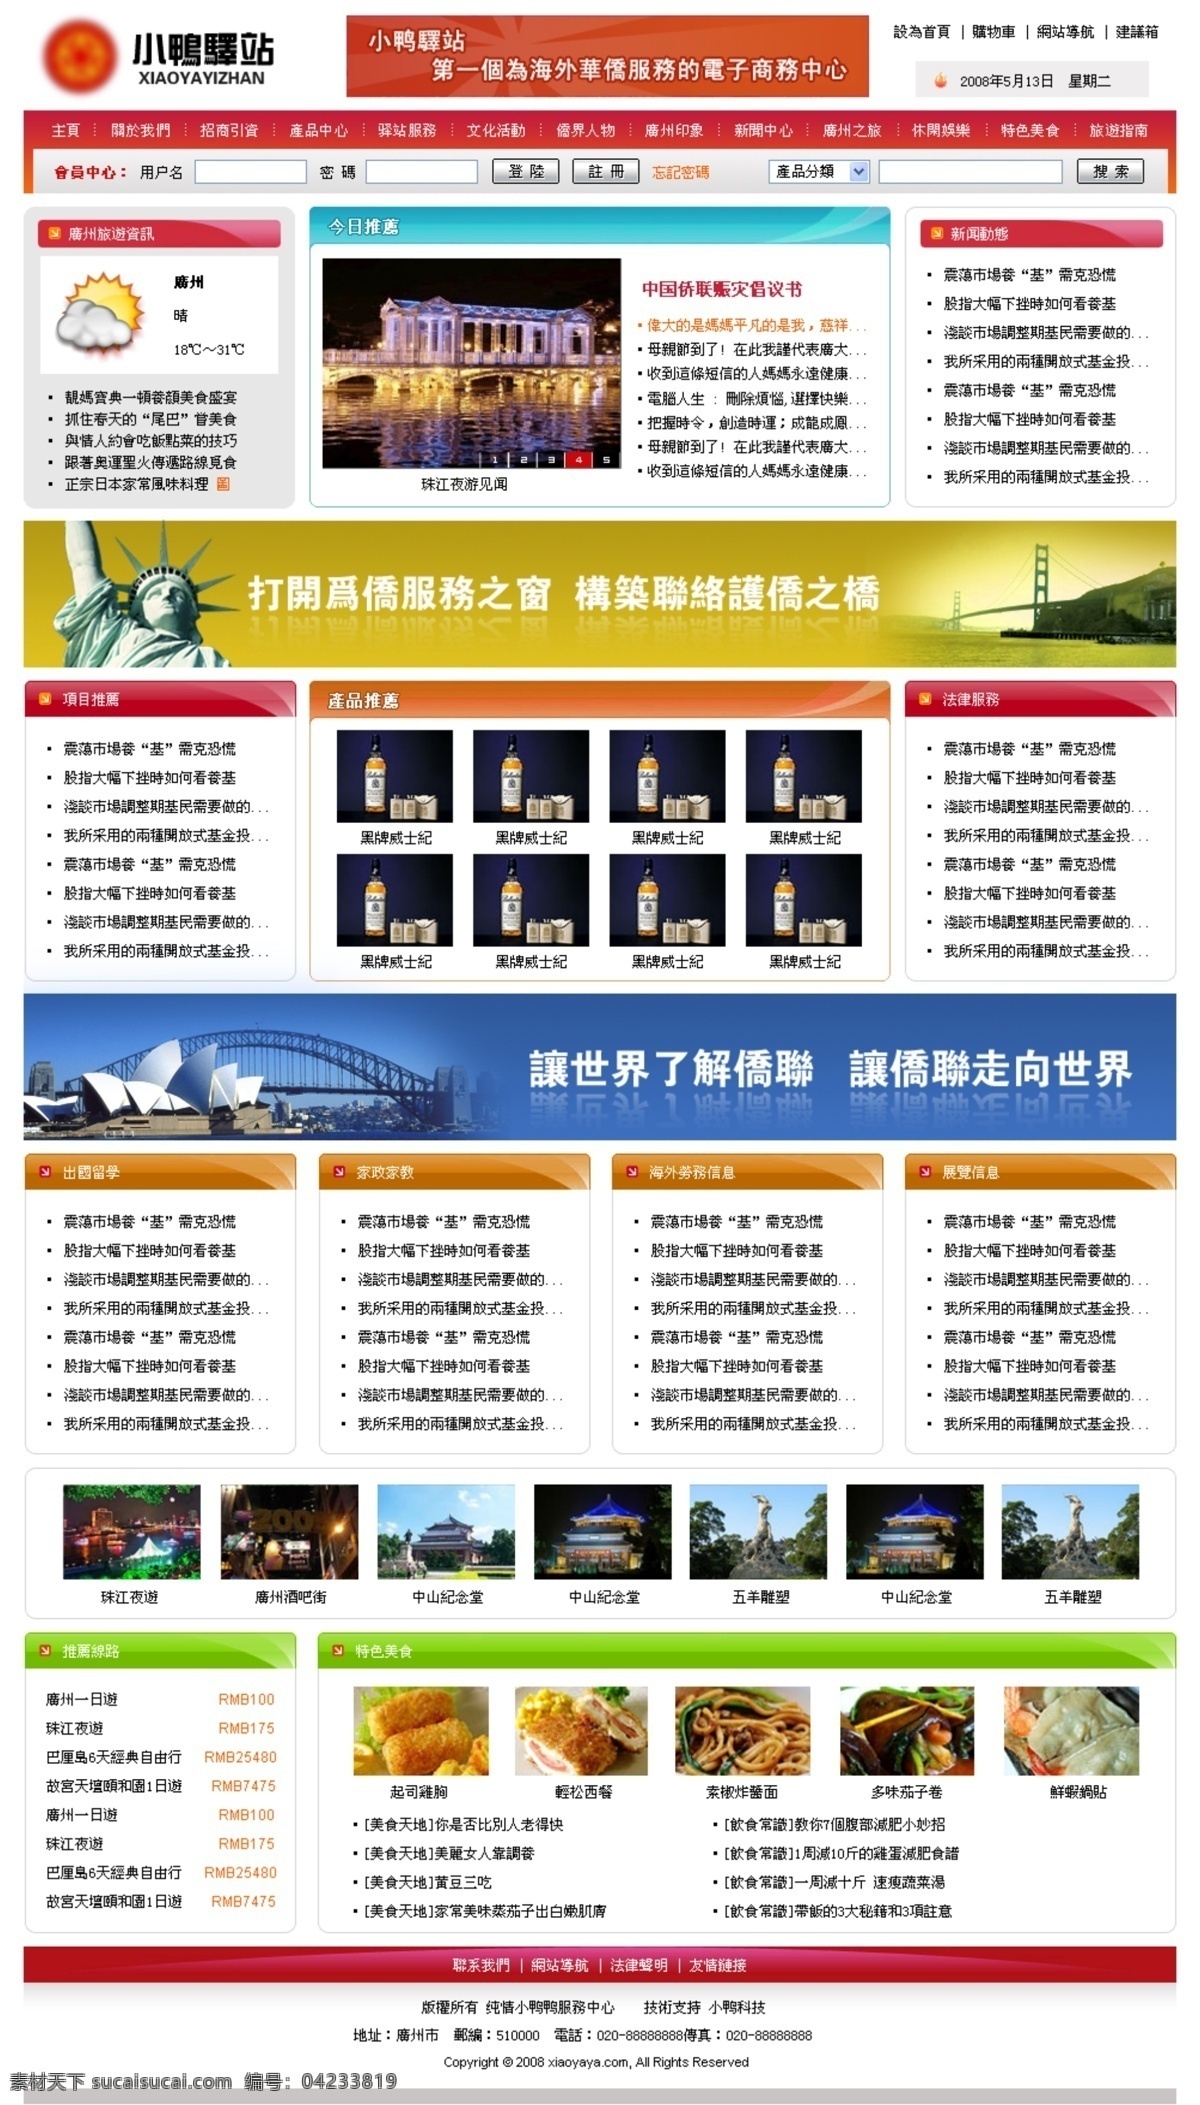 海外华侨 电子商务 网页模板 中国风格 网页素材